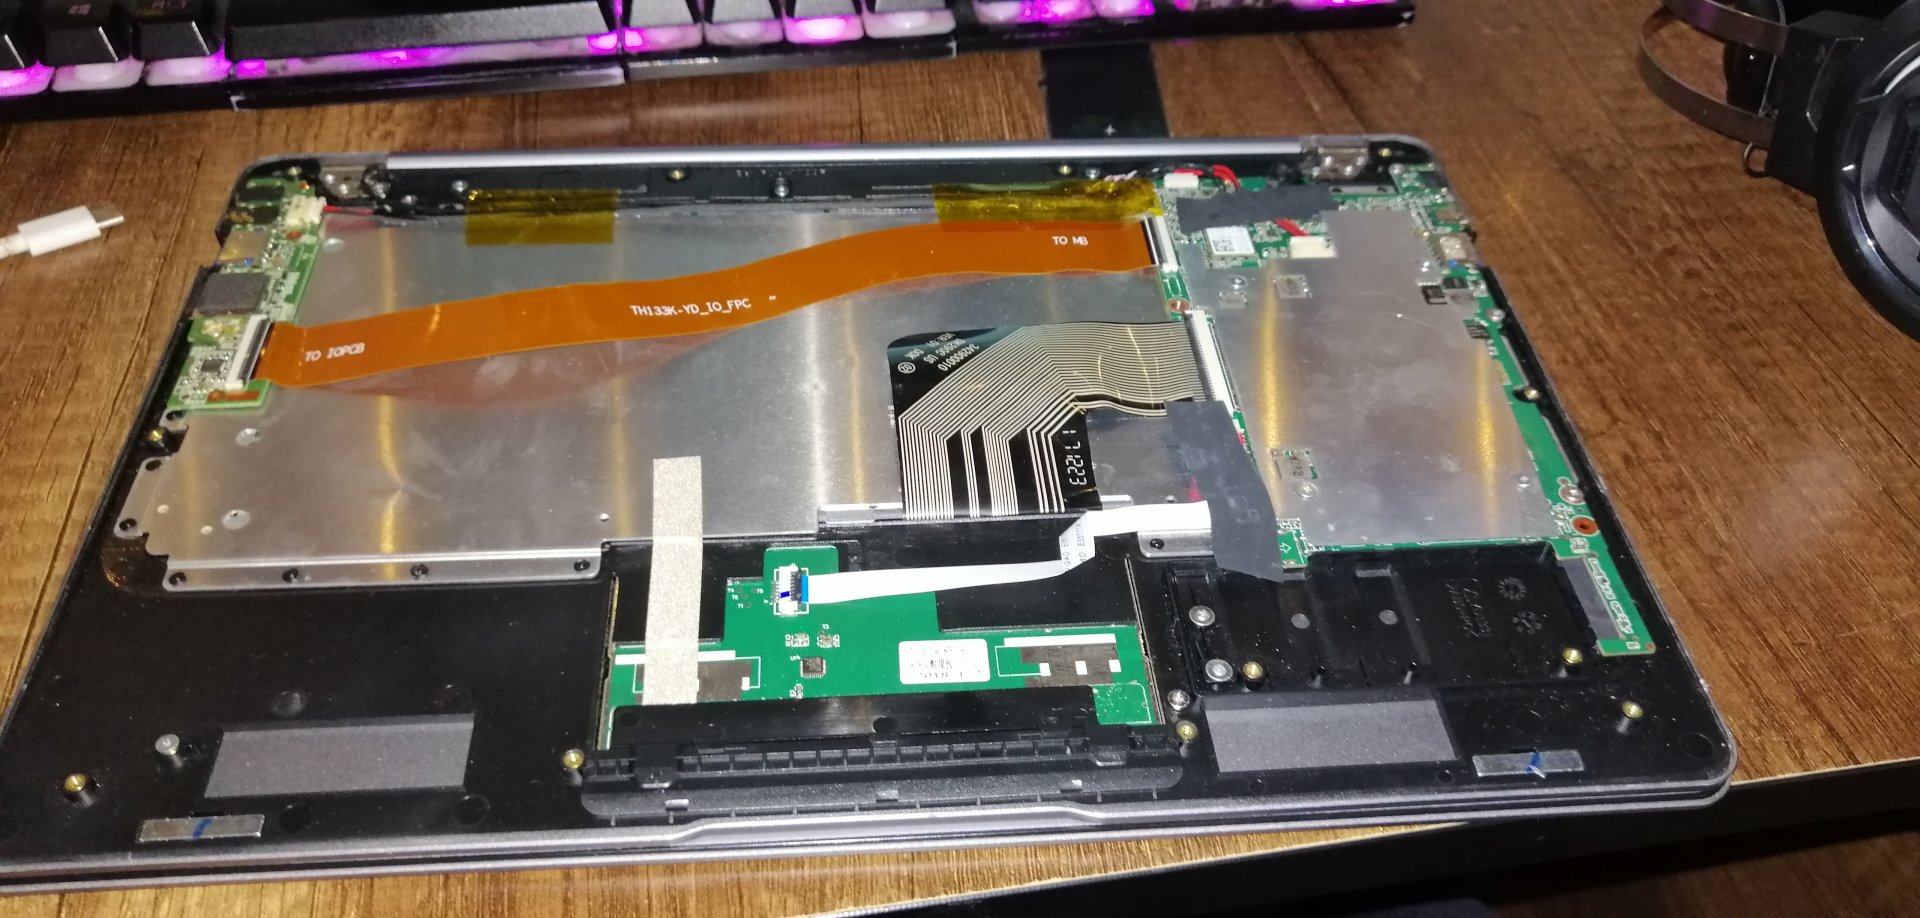 Çözüldü: Hometech CE0700 laptopta SSD nasıl takılır? | Technopat Sosyal